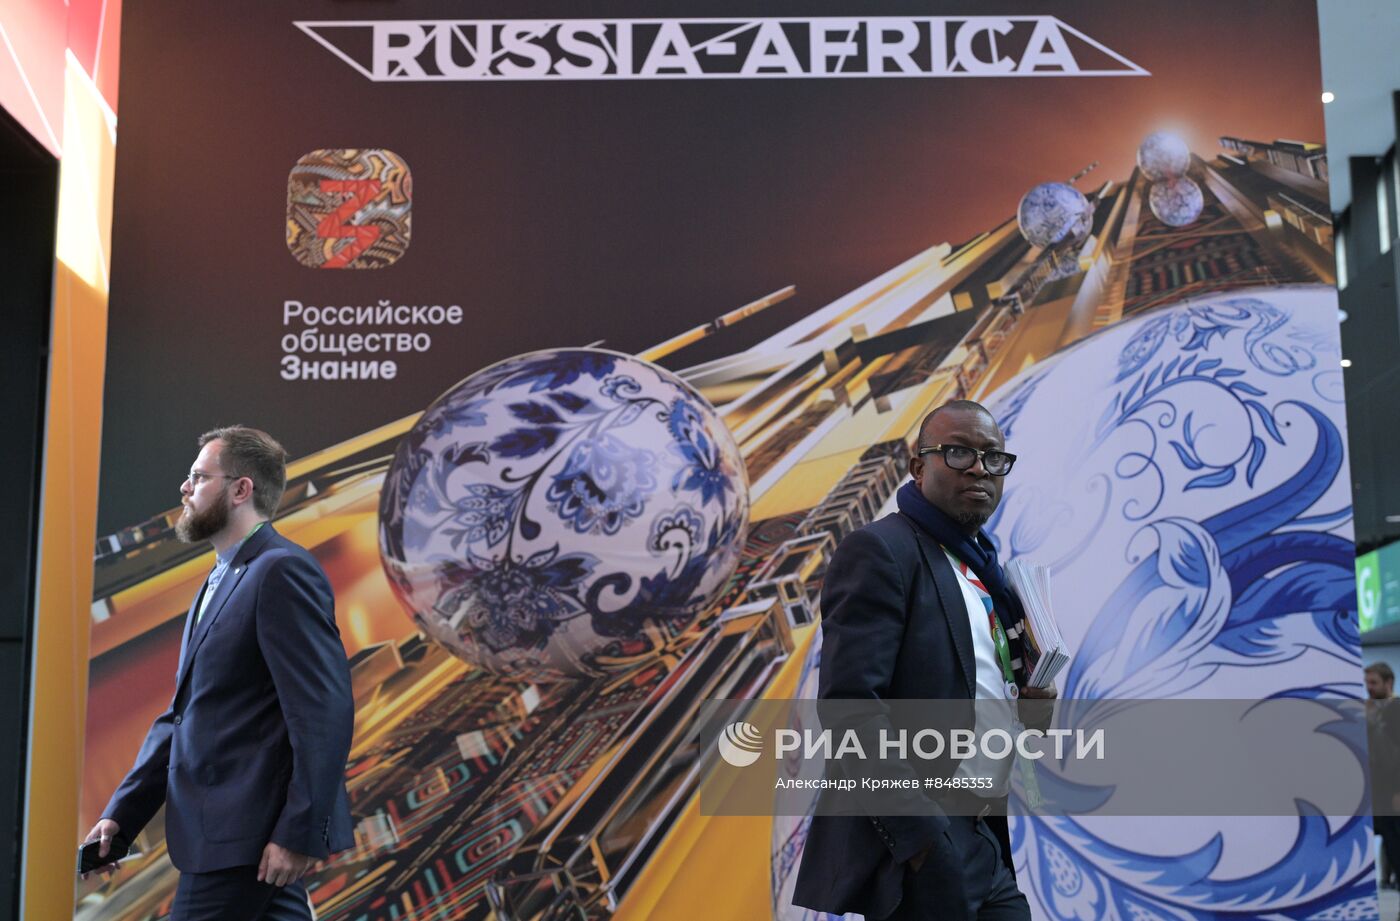 II Cаммит и форум "Россия - Африка". Работа форума